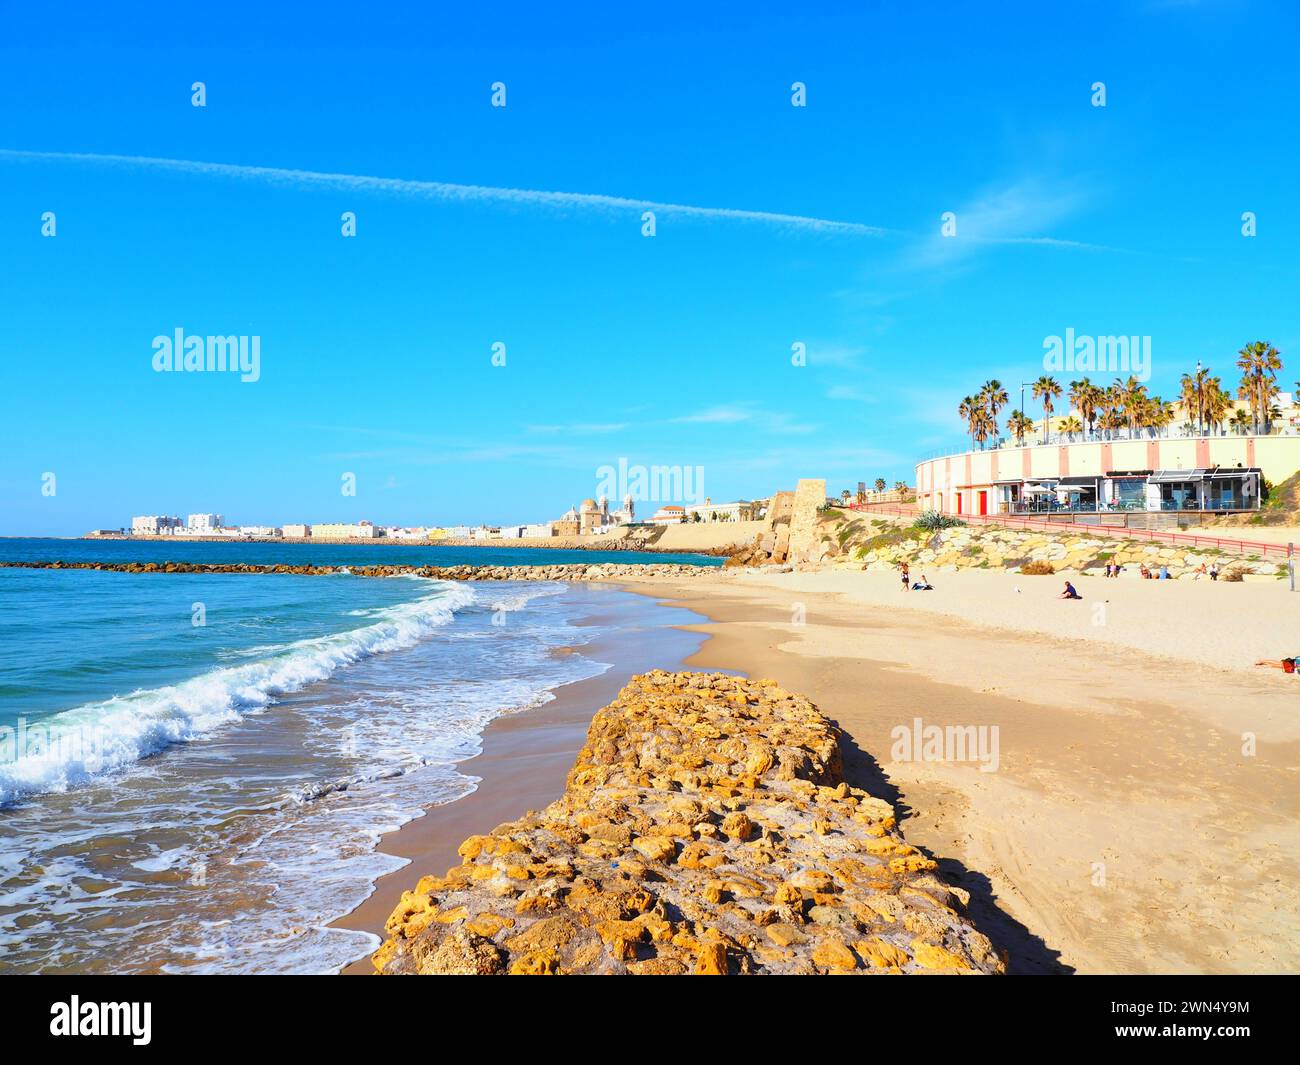 Beaches of Andalusia, Costa de la Luz, Cadiz, Spain Stock Photo